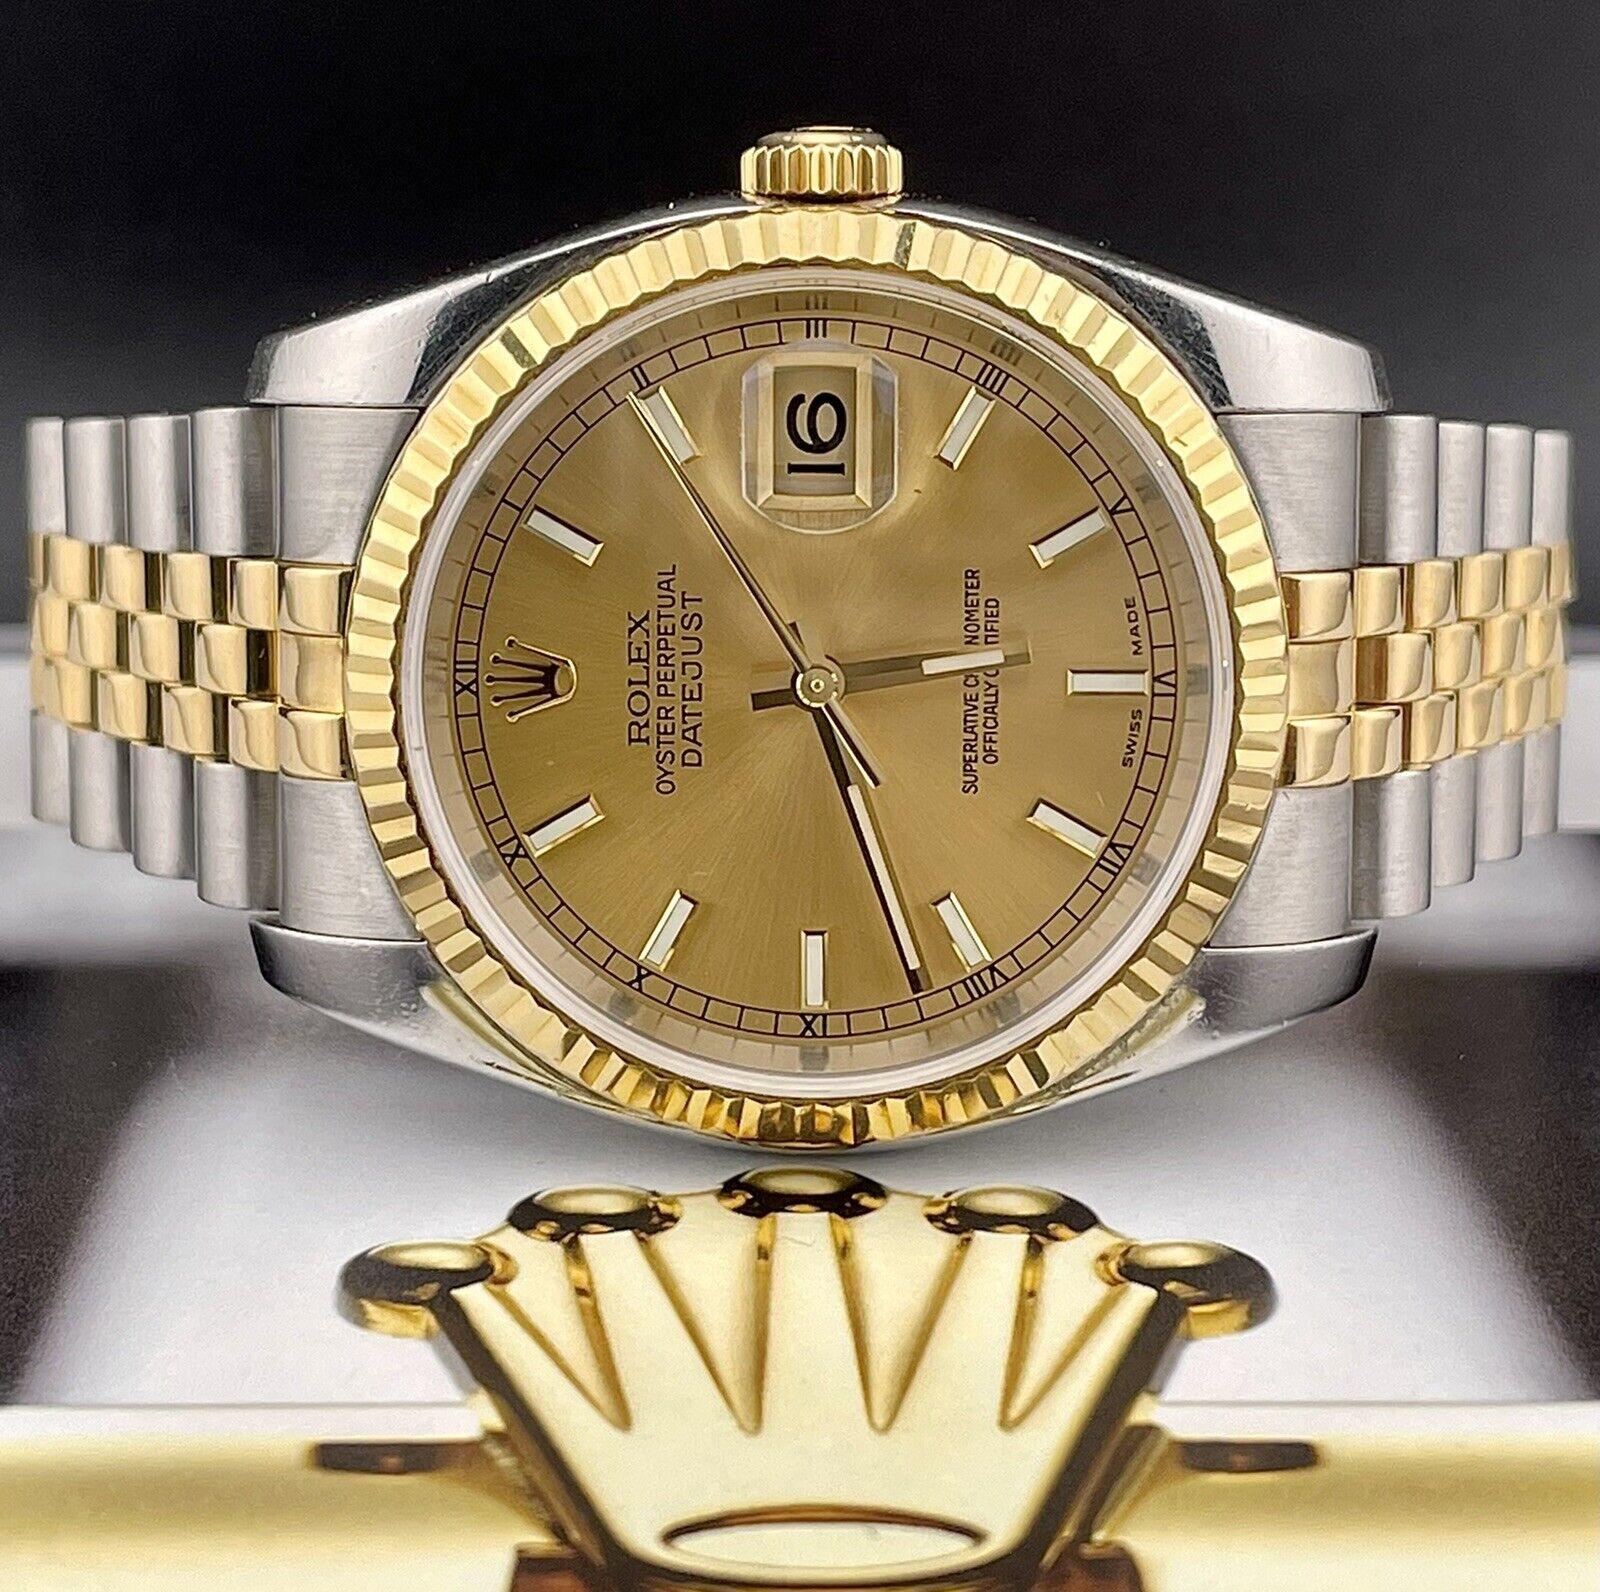 Rolex Datejust 36mm Uhr. Ein Pre-owned Uhr w / Geschenk-Box. Uhr ist 100% authentisch und kommt mit
Echtheitskarte. Watch Reference ist 116233 und ist in ausgezeichnetem Zustand (siehe Bilder). Die Zifferblattfarbe ist
Gold und MATERIAL sind